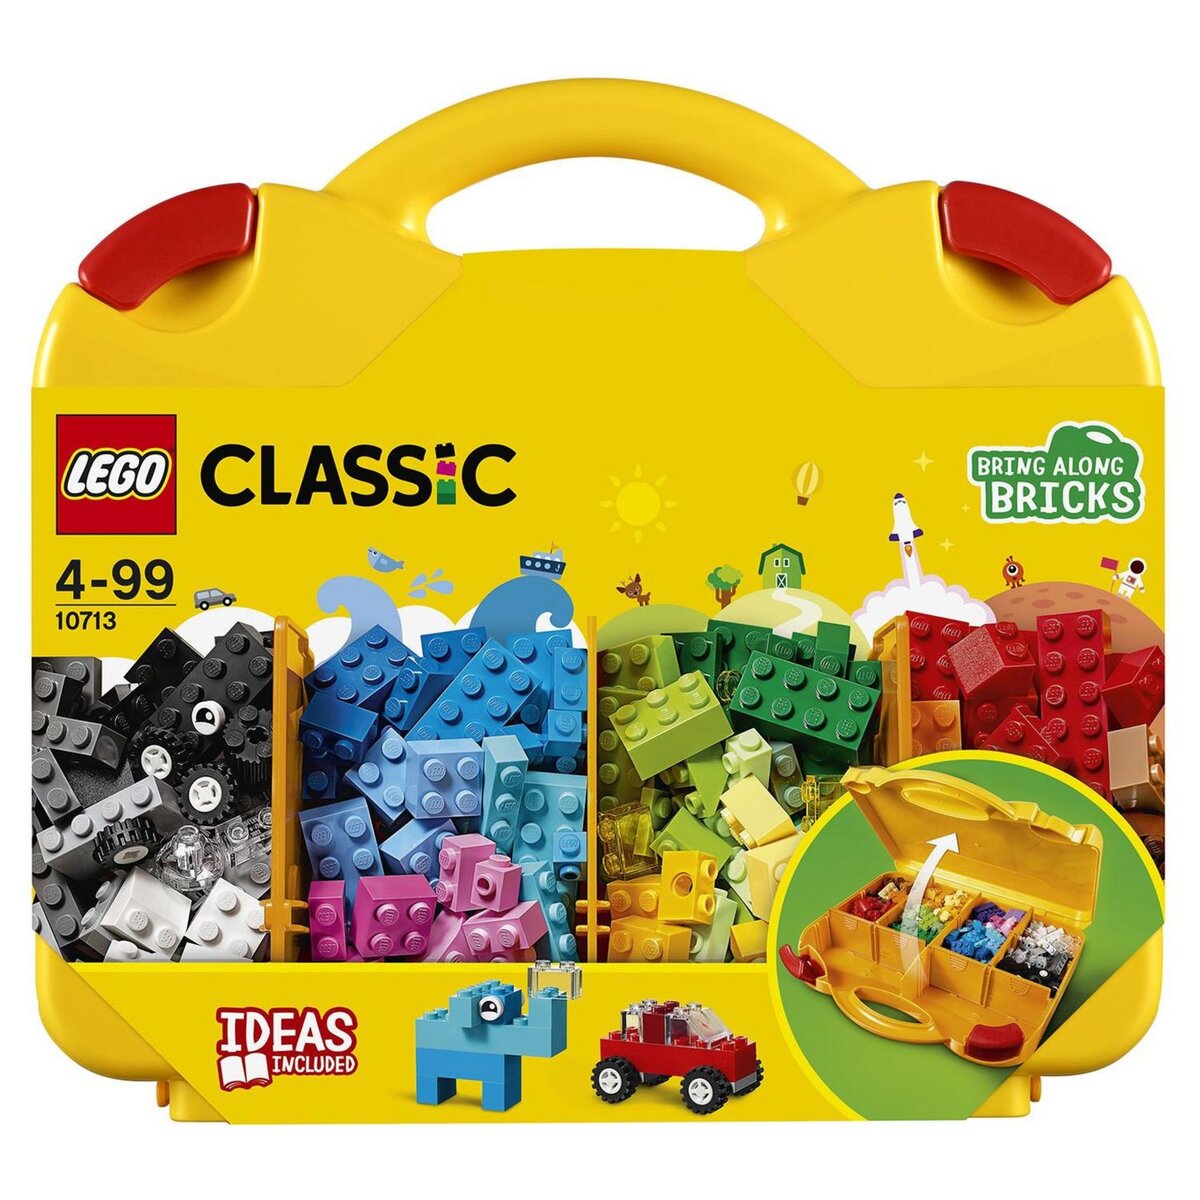 LEGO Classic 11025 La Plaque de Construction - Bleue